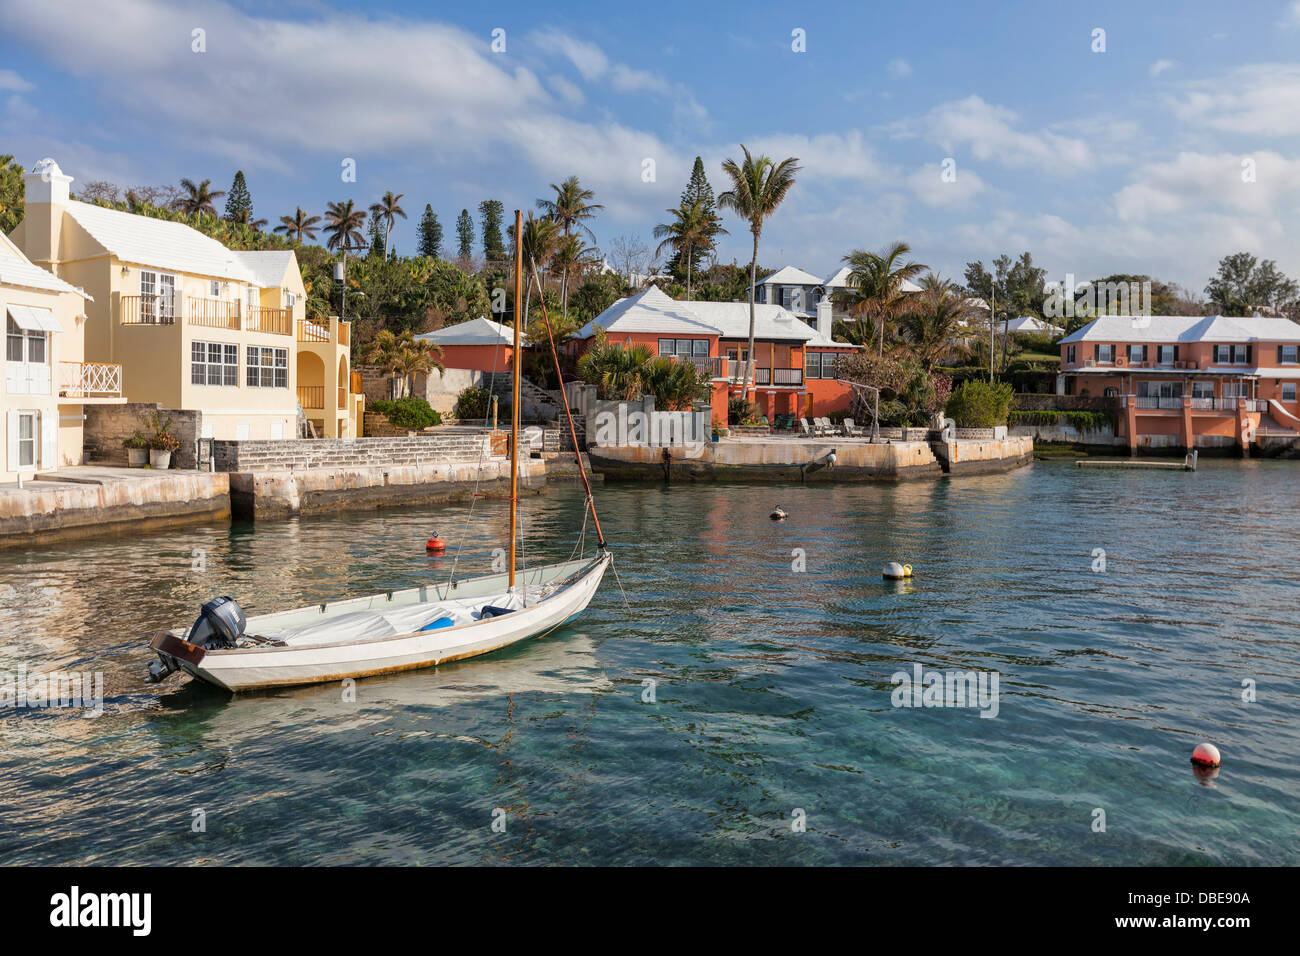 Les bateaux de plaisance amarrés le long des rives du port de Hamilton avec la ville de Hamilton, Bermudes dans la distance. Banque D'Images